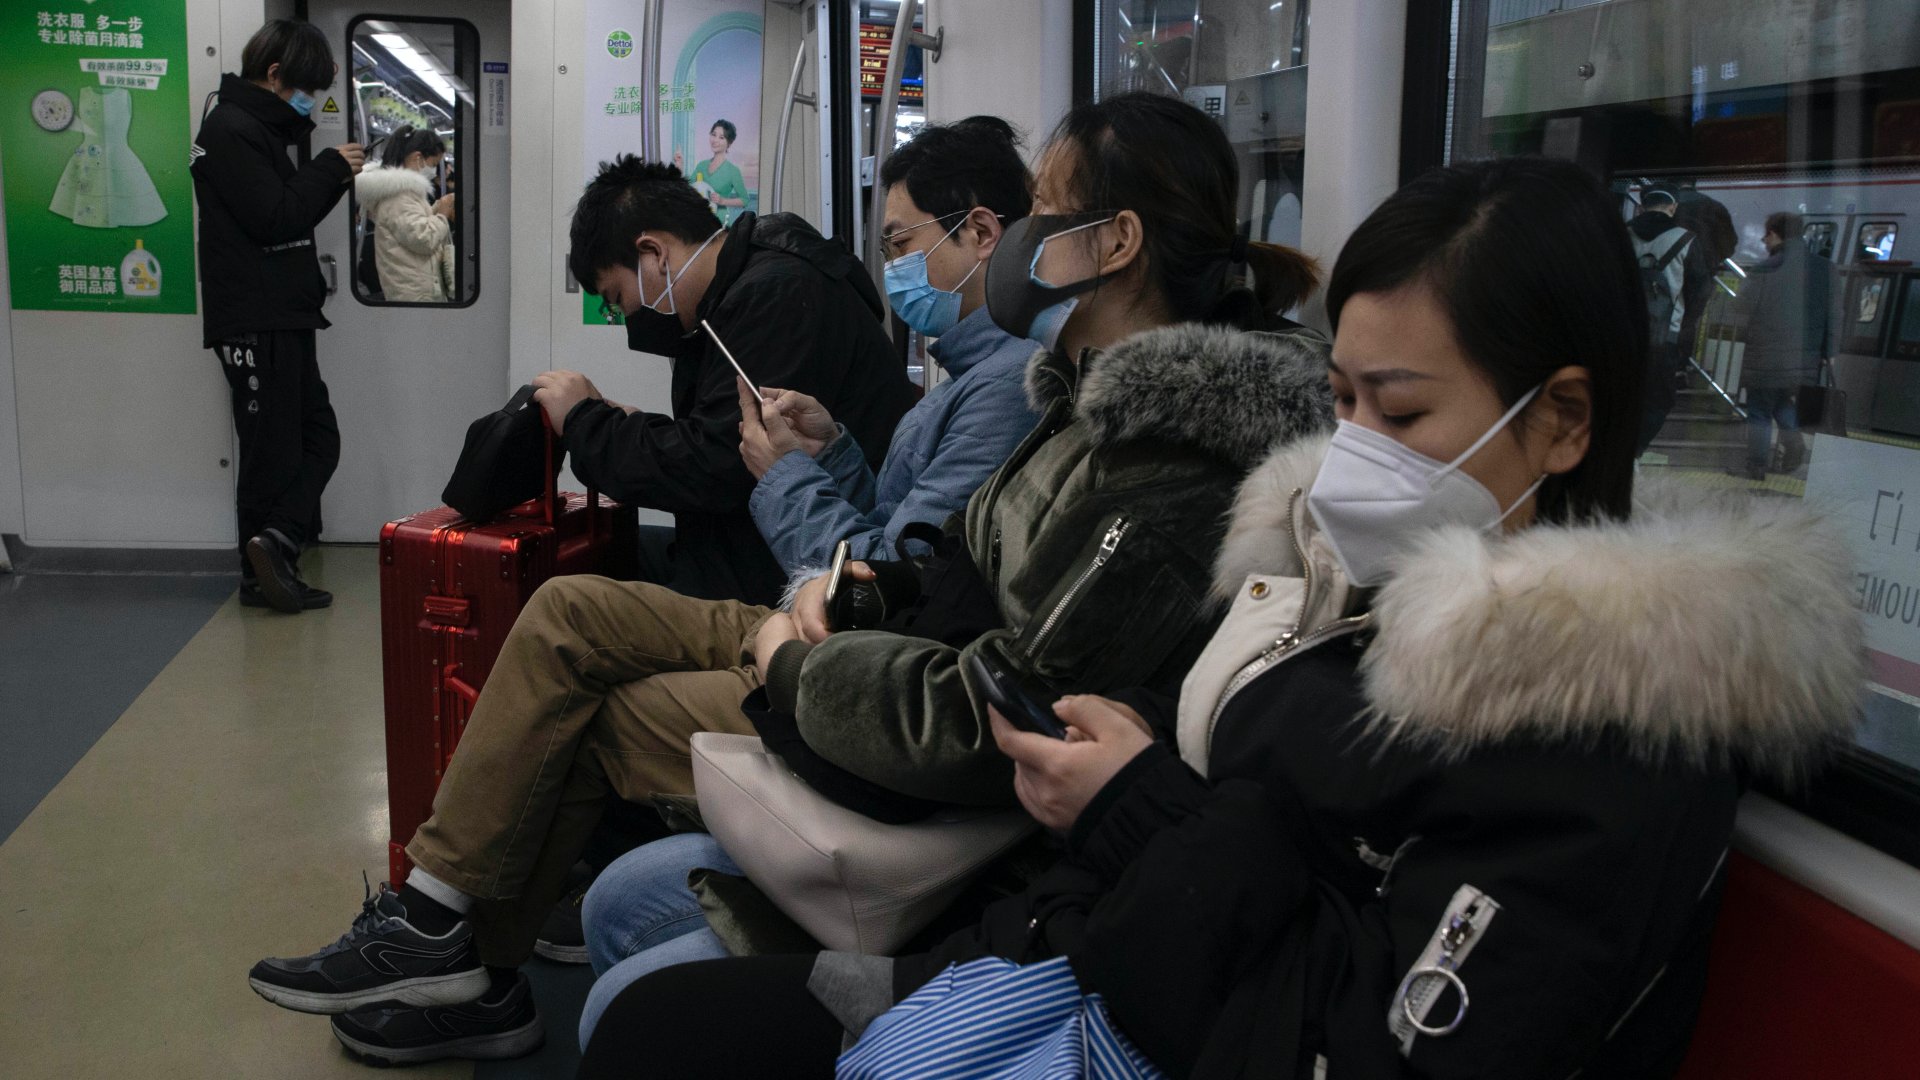 Utasok egy pekingi metrókocsiban a reggeli csúcsforgalom idején, 2020. március 9-én (Fotó: MTI/AP)